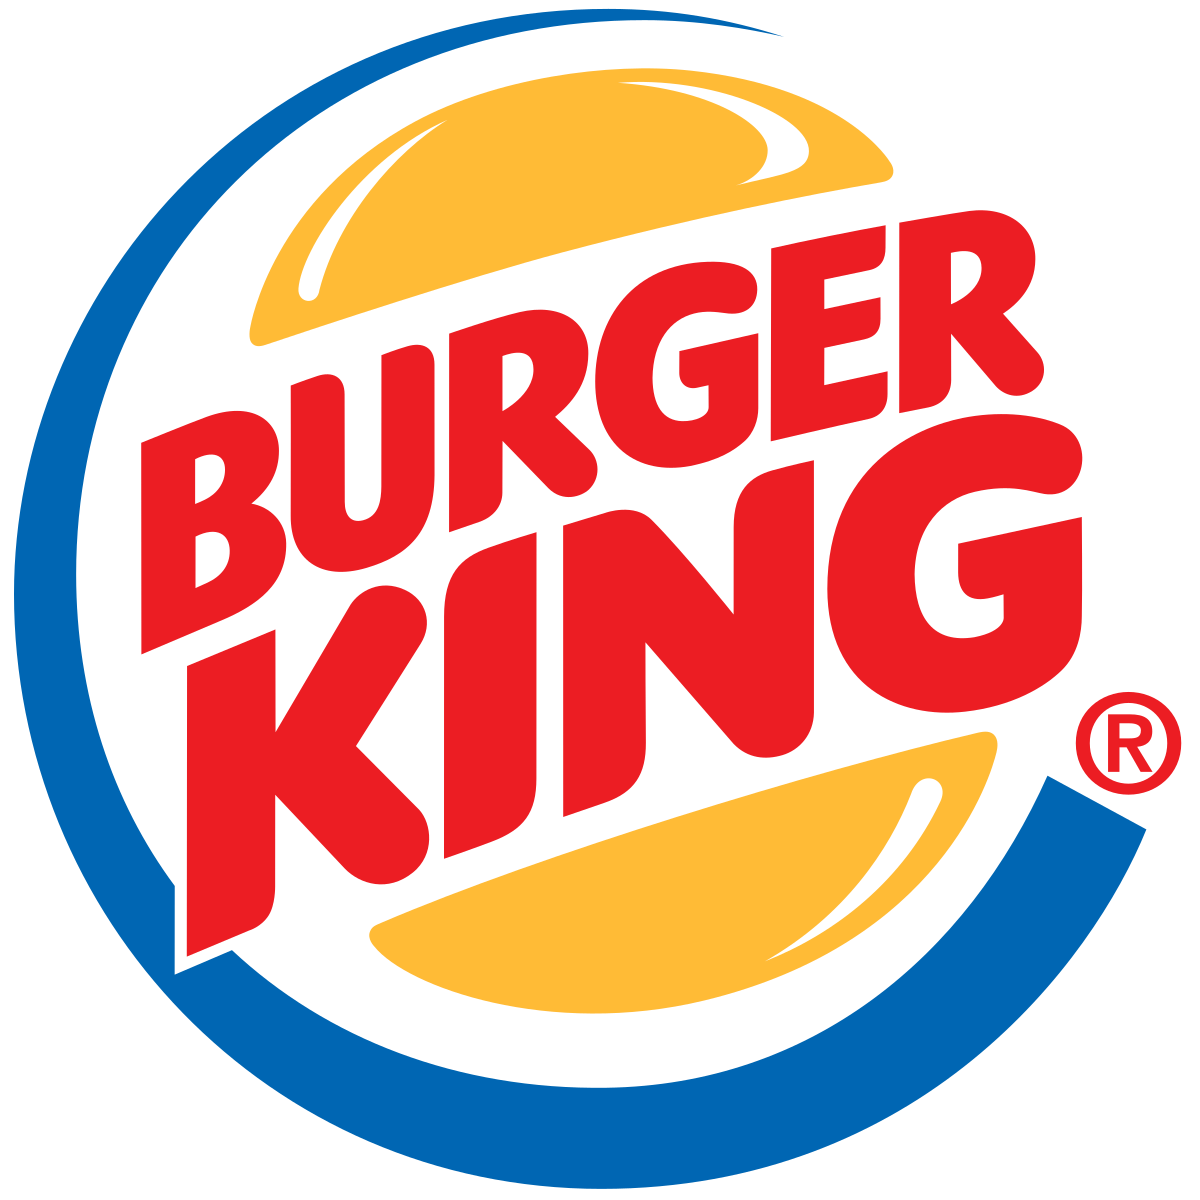 História do Burger King